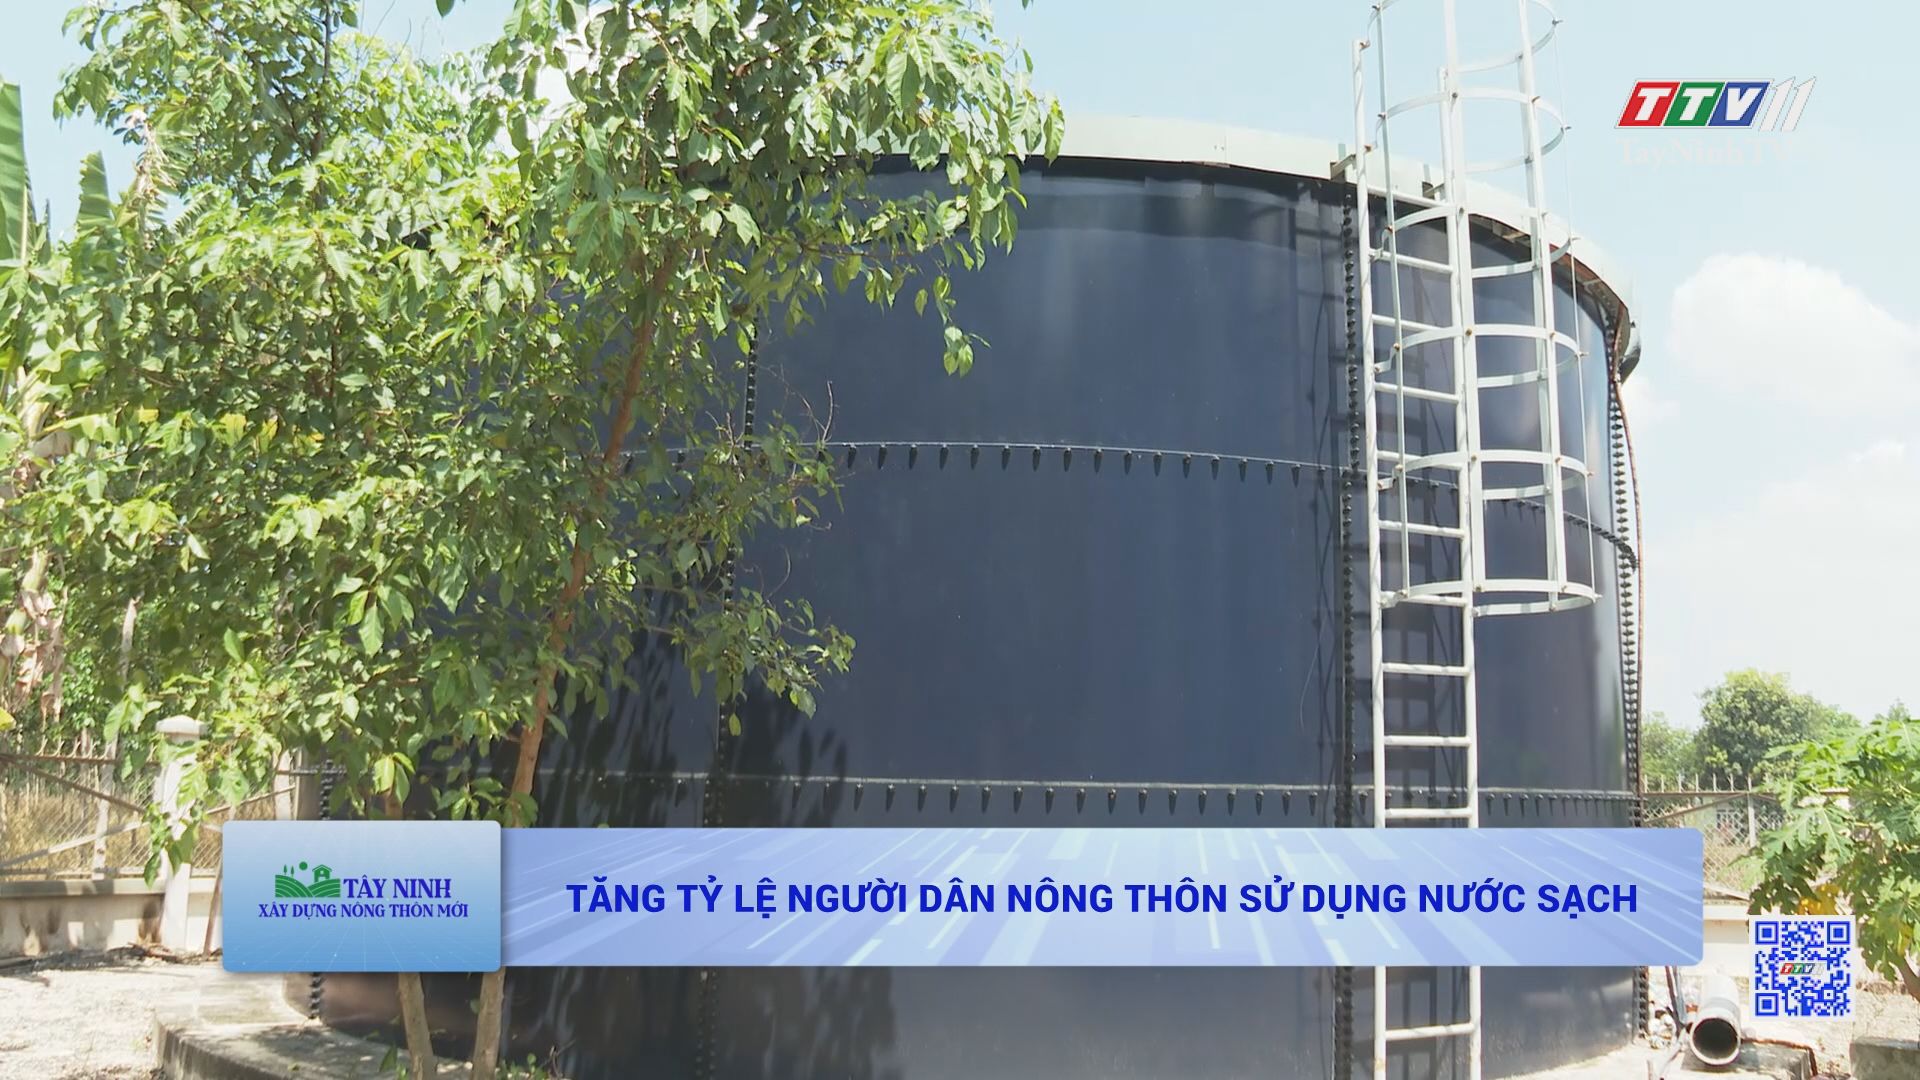 Tăng tỷ lệ người dân nông thôn sử dụng nước sạch | TÂY NINH XÂY DỰNG NÔNG THÔN MỚI | TayNinhTV